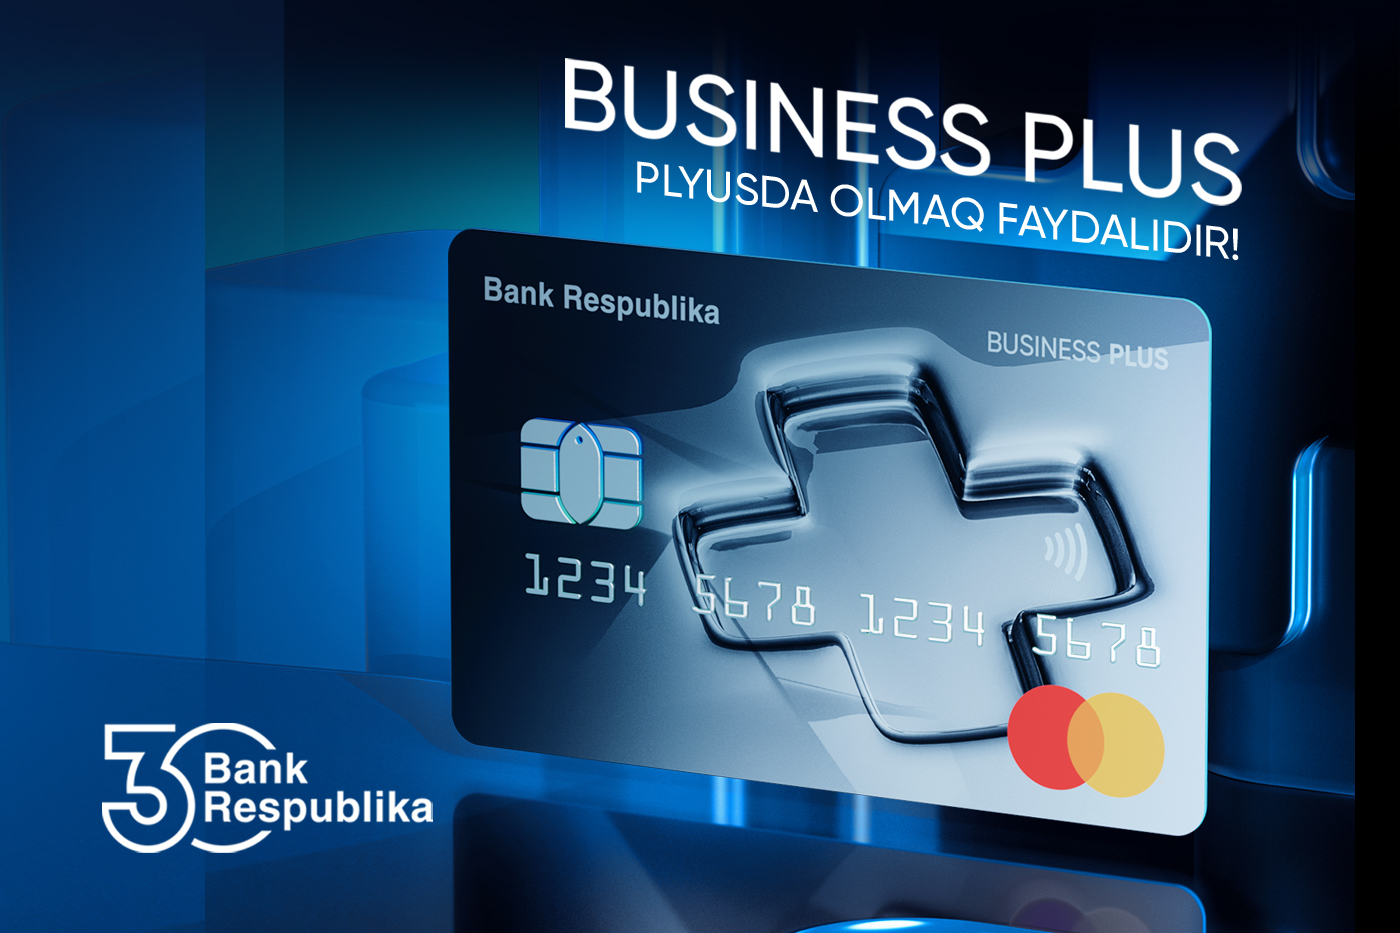 Банк Республика представил новую карту для предпринимателей «Business Plus»